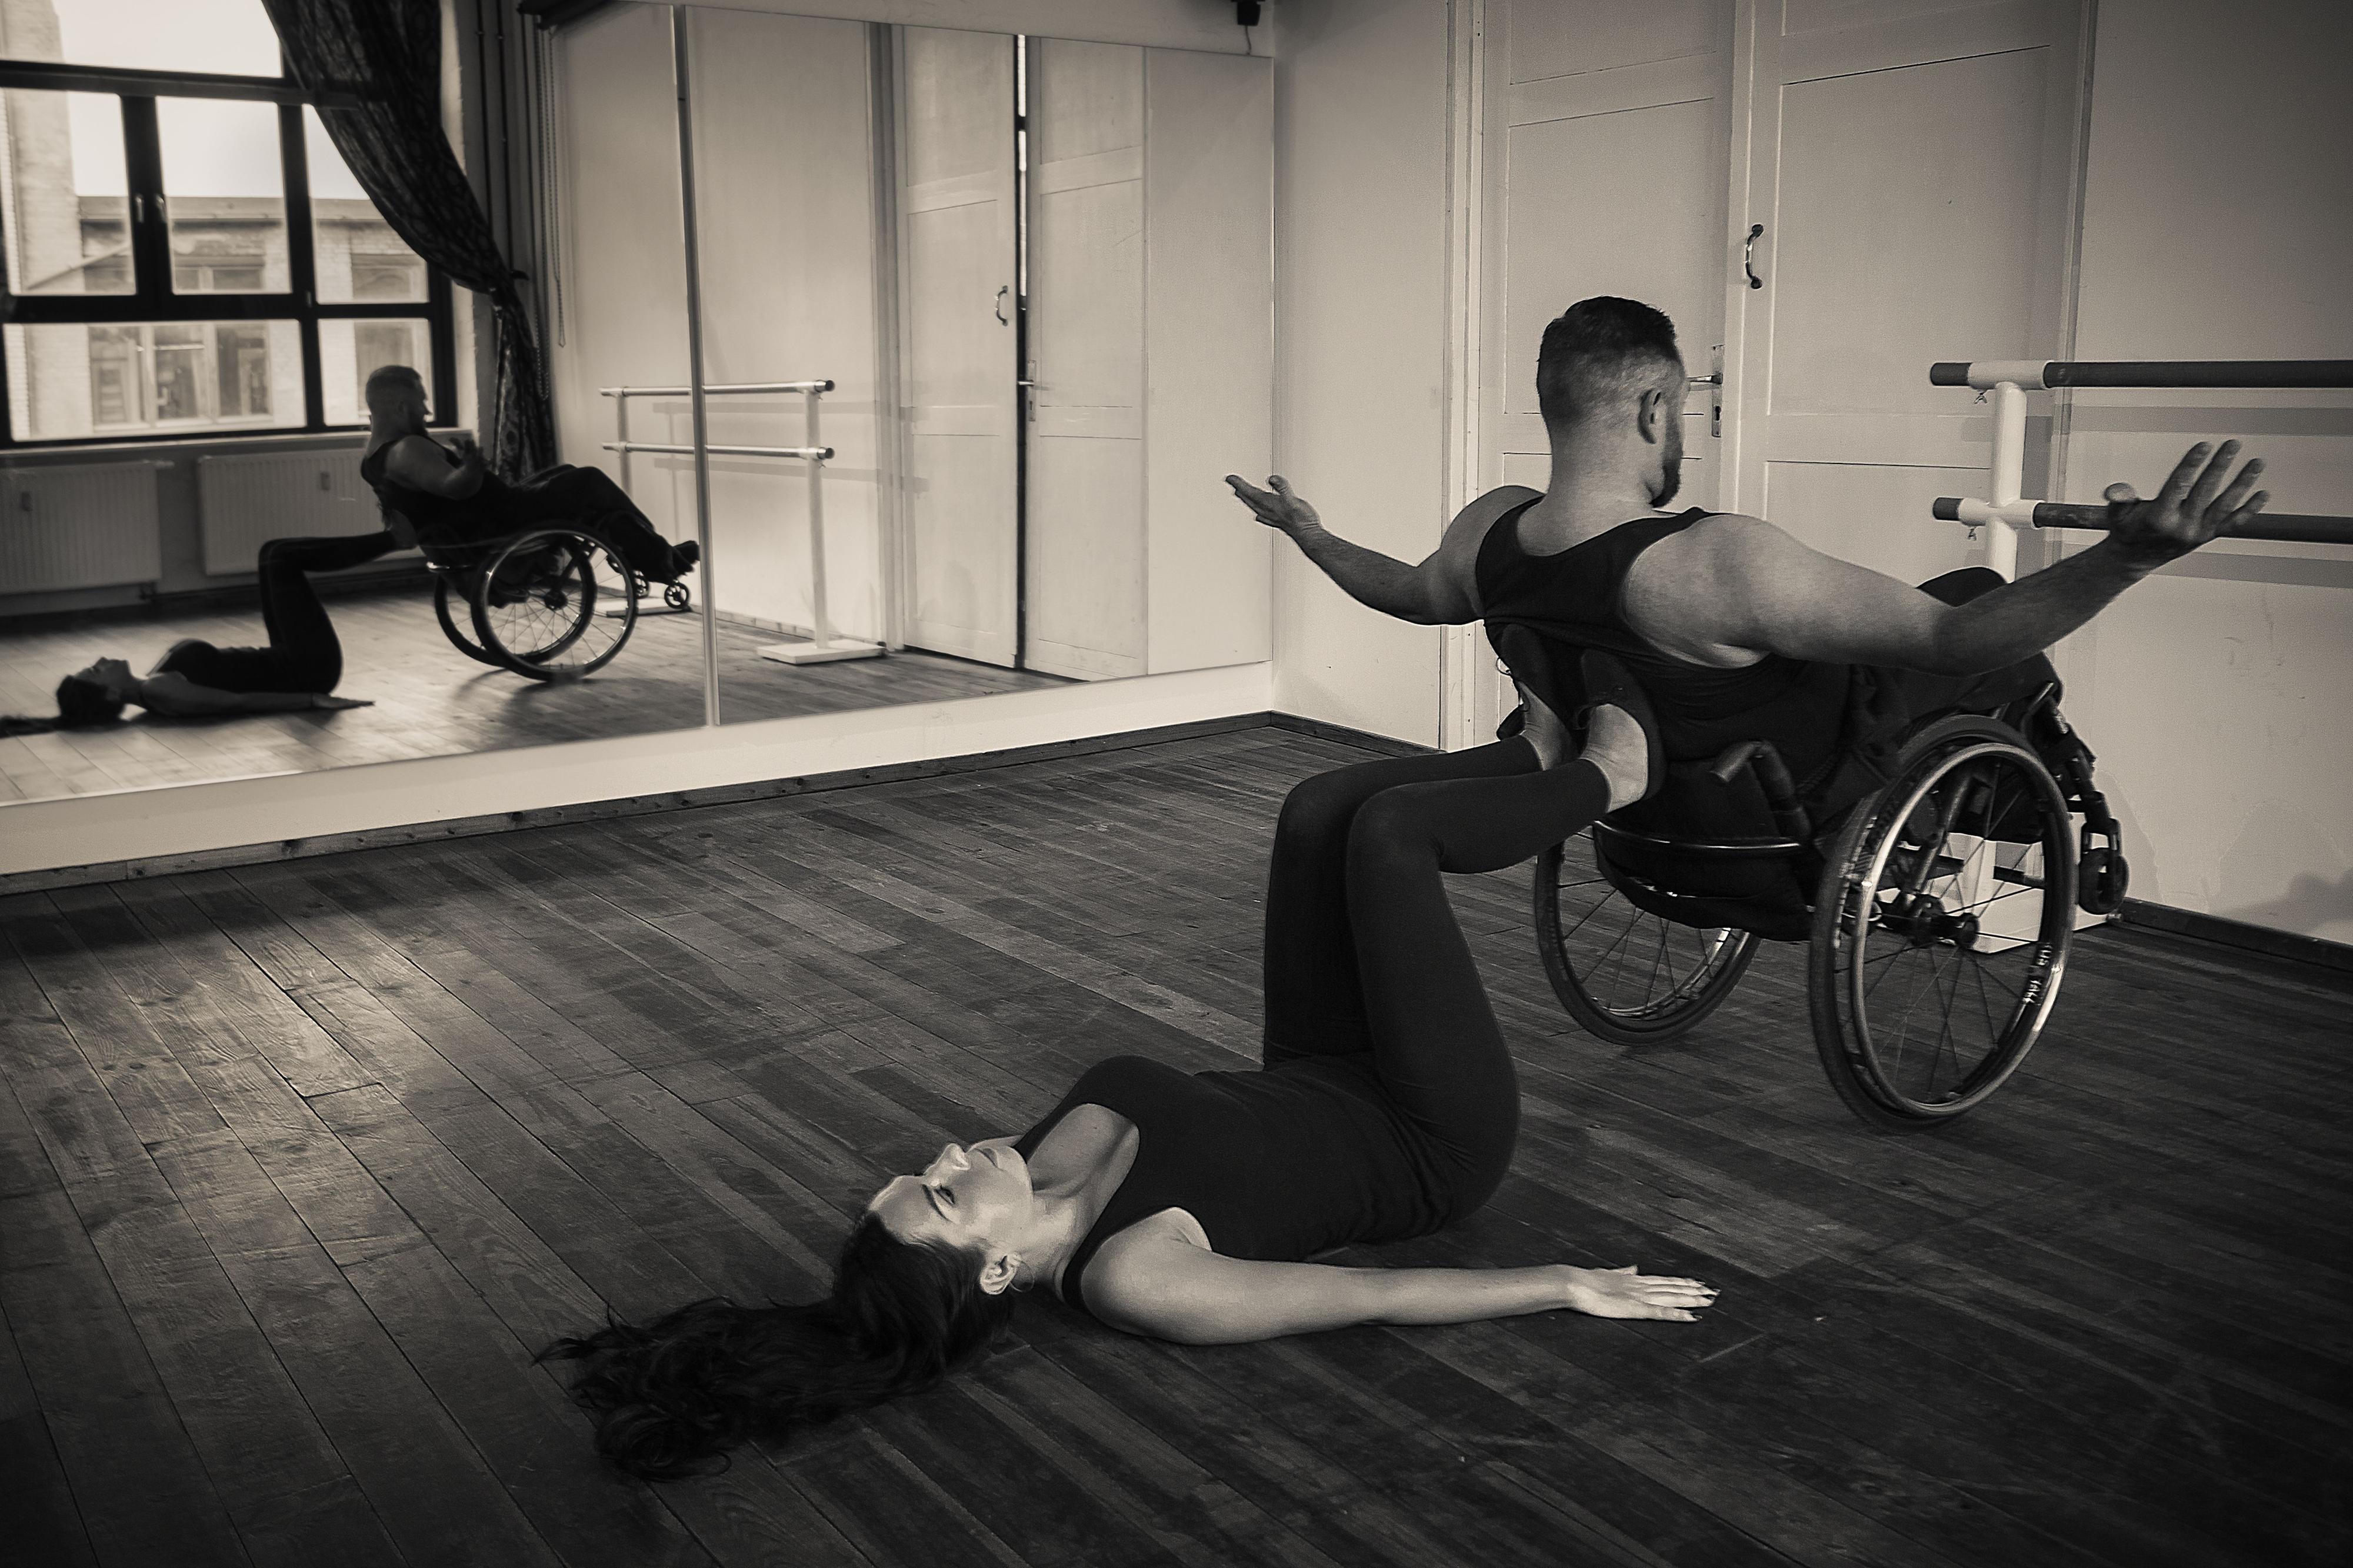 Eine Frau liegt auf dem Boden eines Tanzsaals und stützt mit ihren Füßen einen schräg stehende Rollstuhl, in dem ein Mann sitzt.